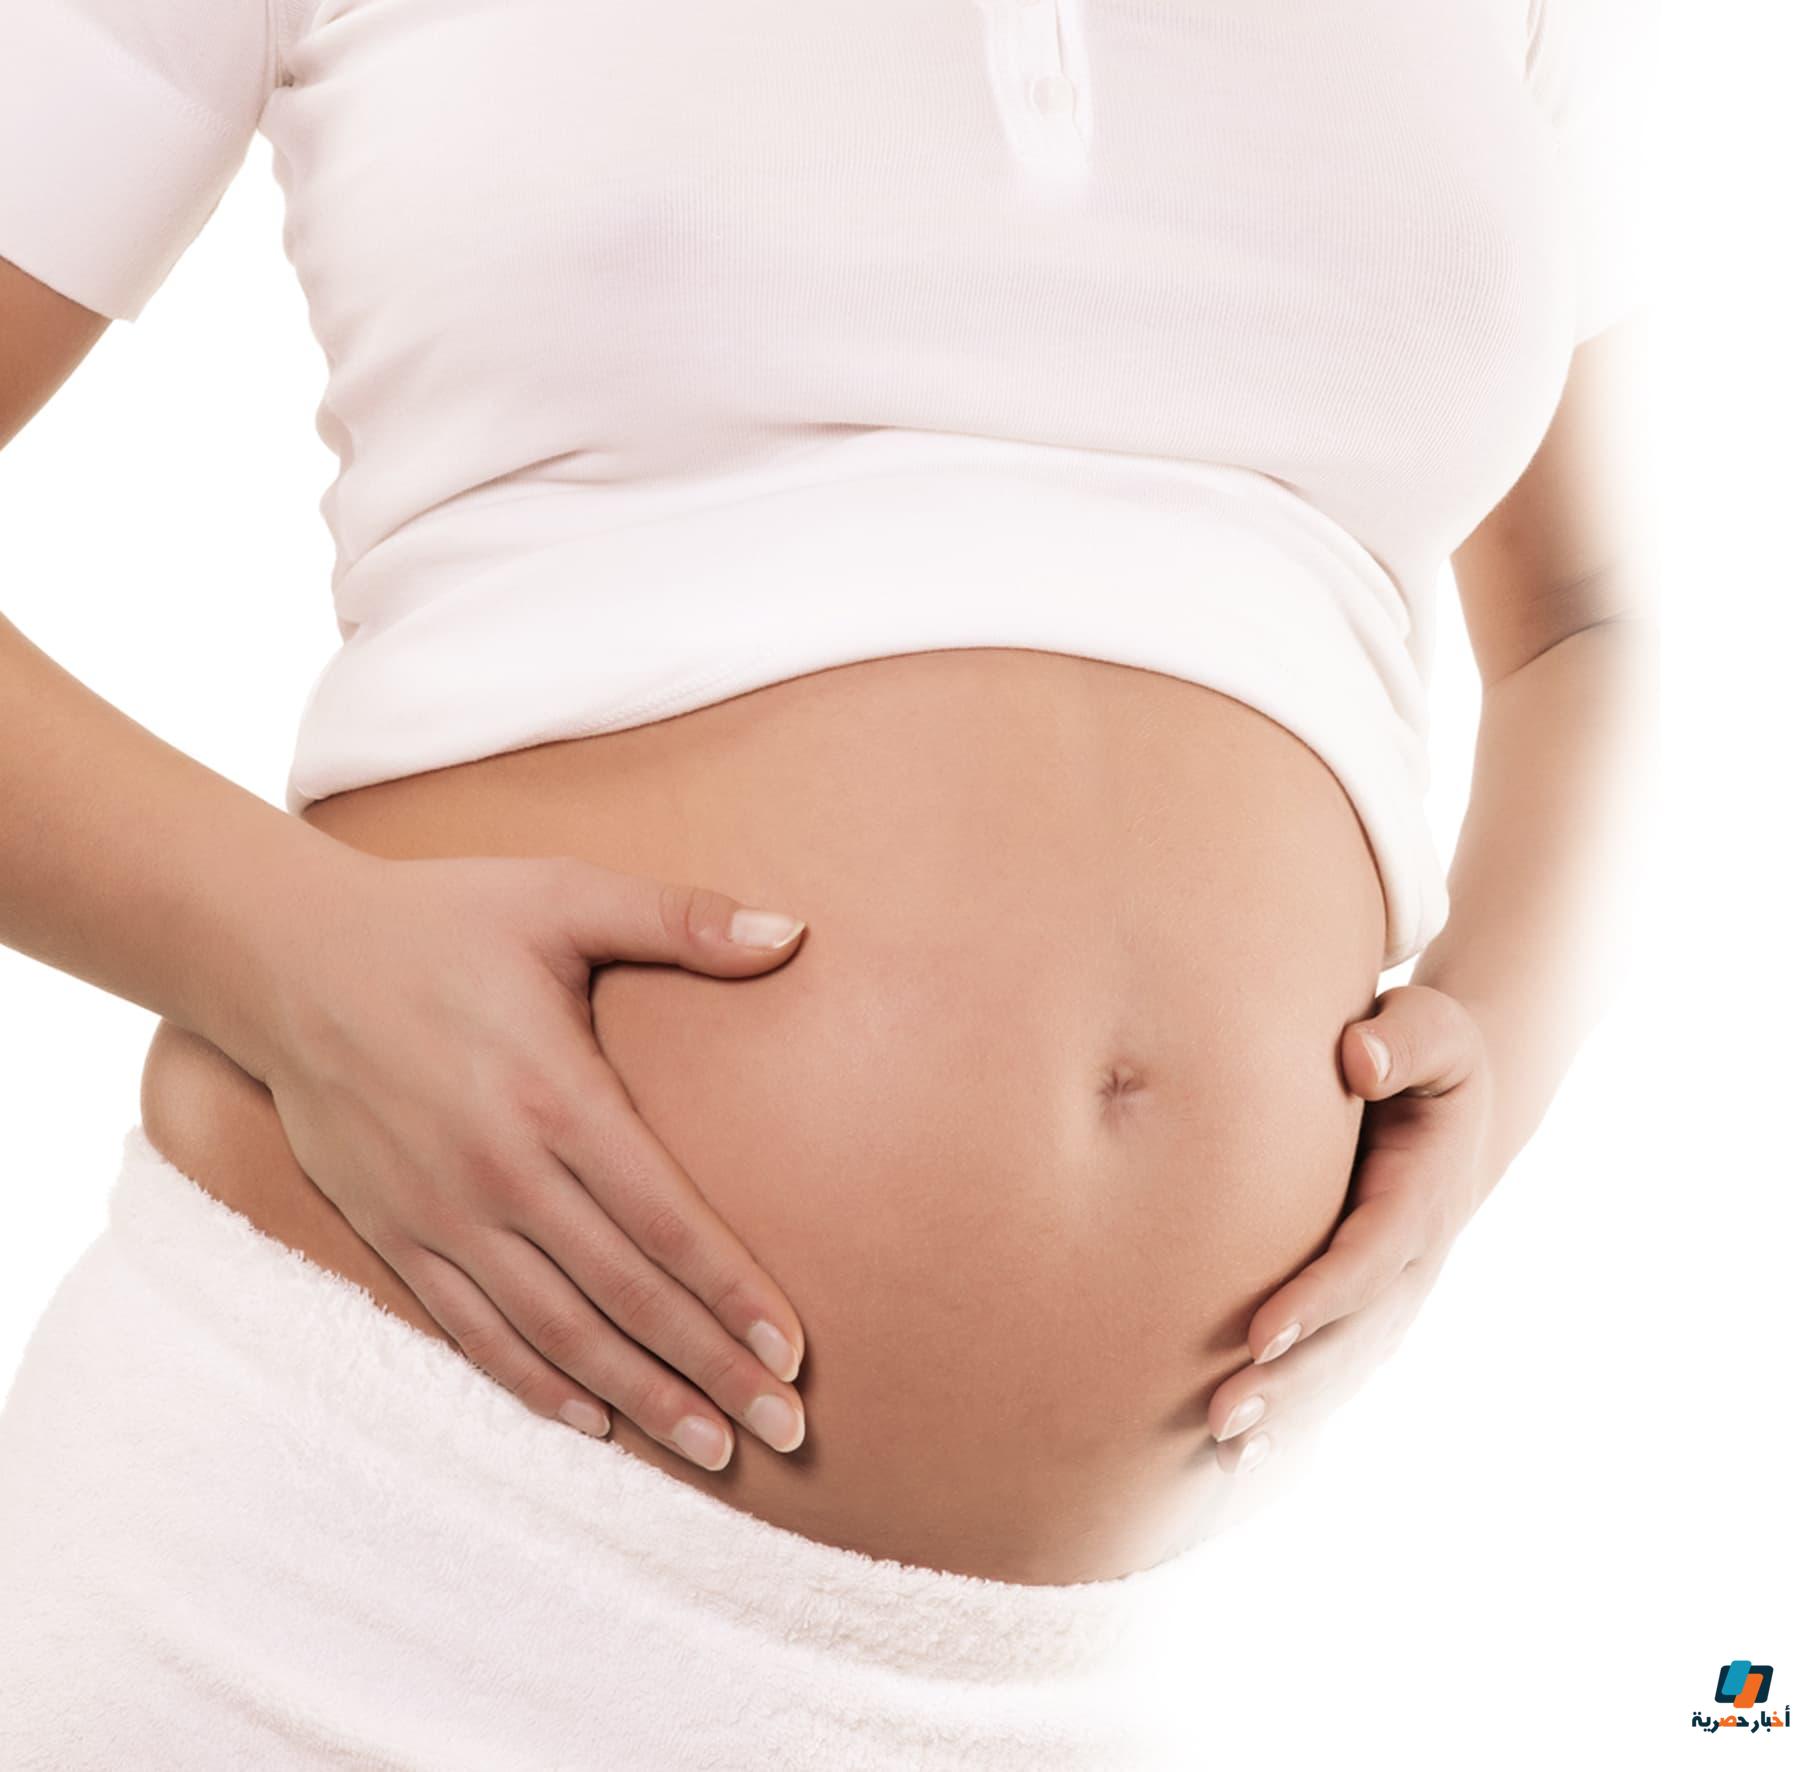 أعراض الحمل قبل الدورة بعشرة أيام عن تجربة تفصيلية أبرزها بقع الدم والحرارة